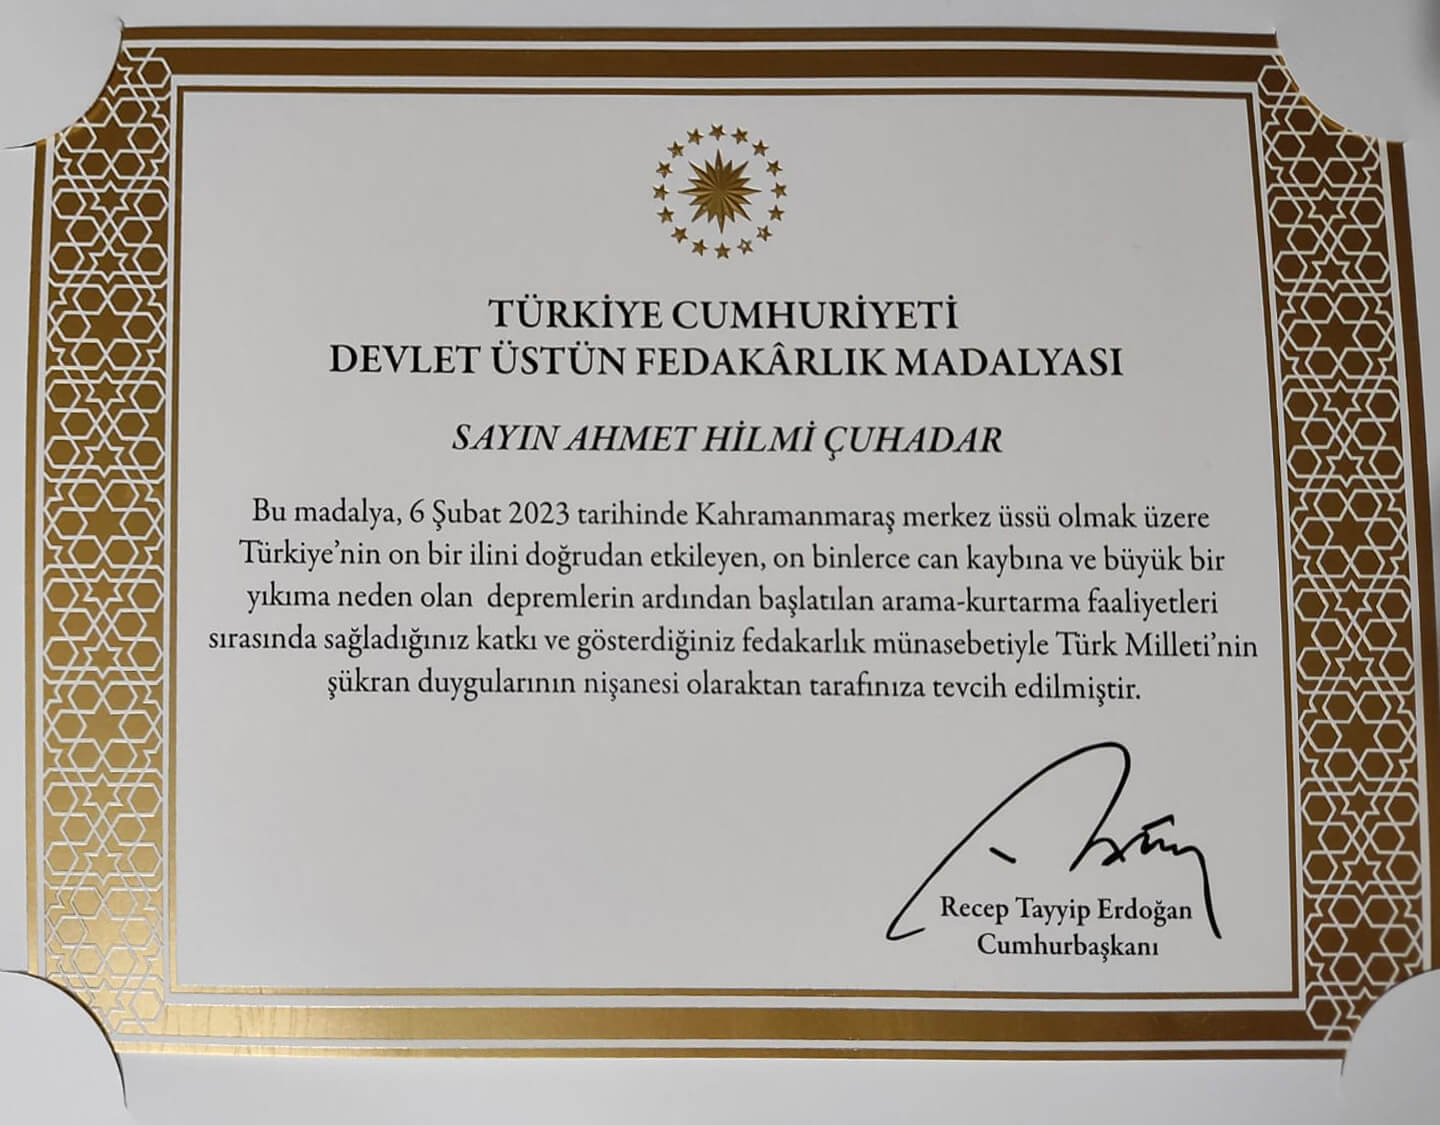 Madalyayı, temsilen Ankara ekibi liderimiz Ahmet Hilmi Çuhadar aldı.